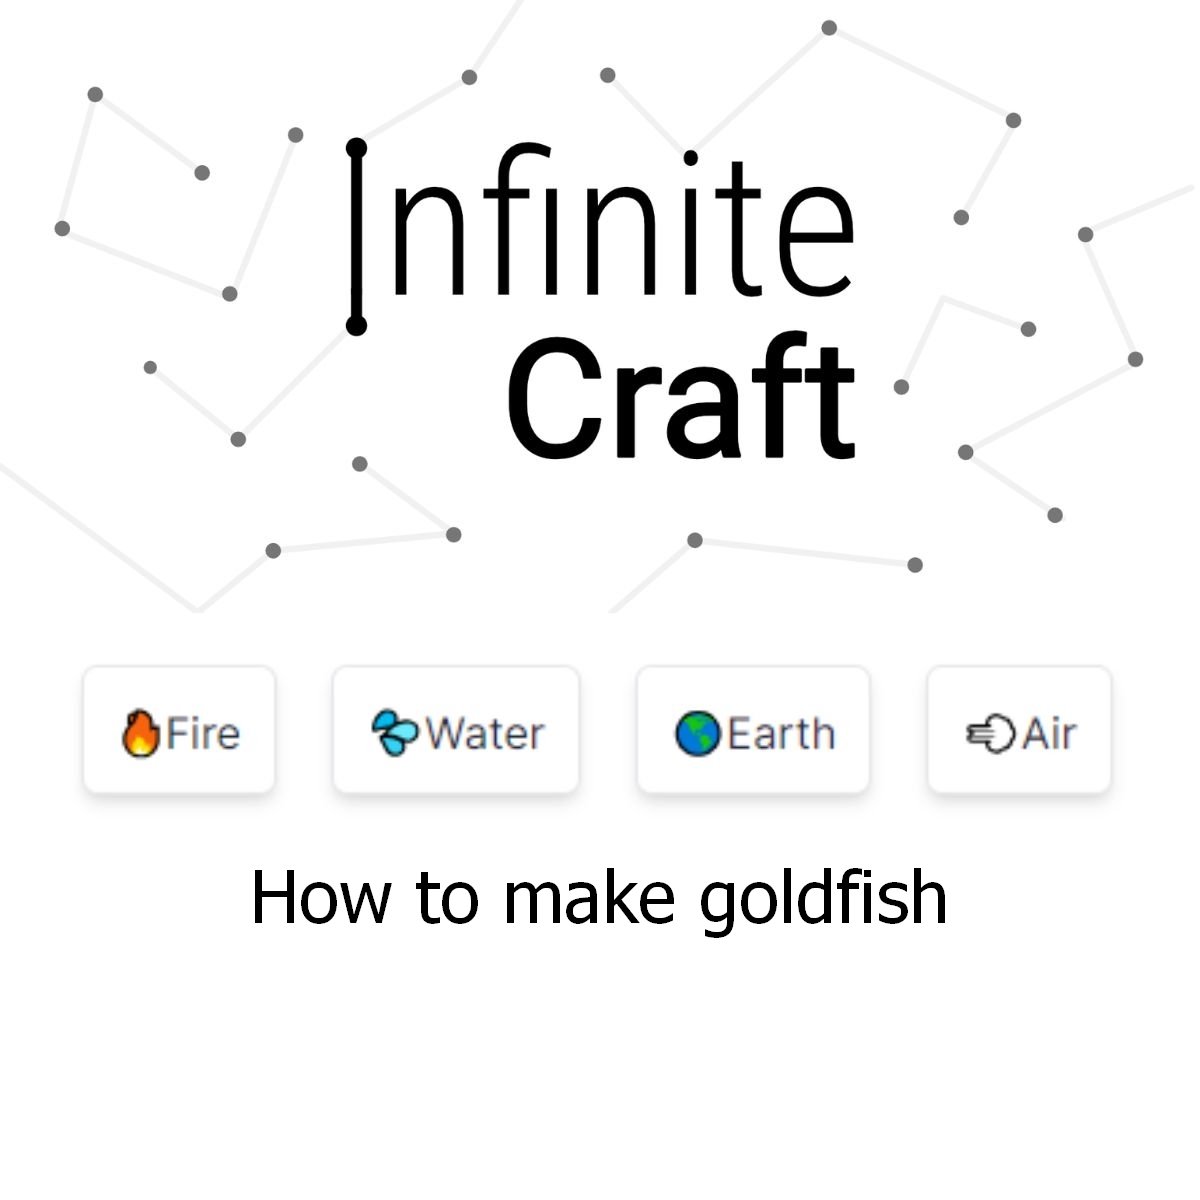 how to make goldfish in infinite craft